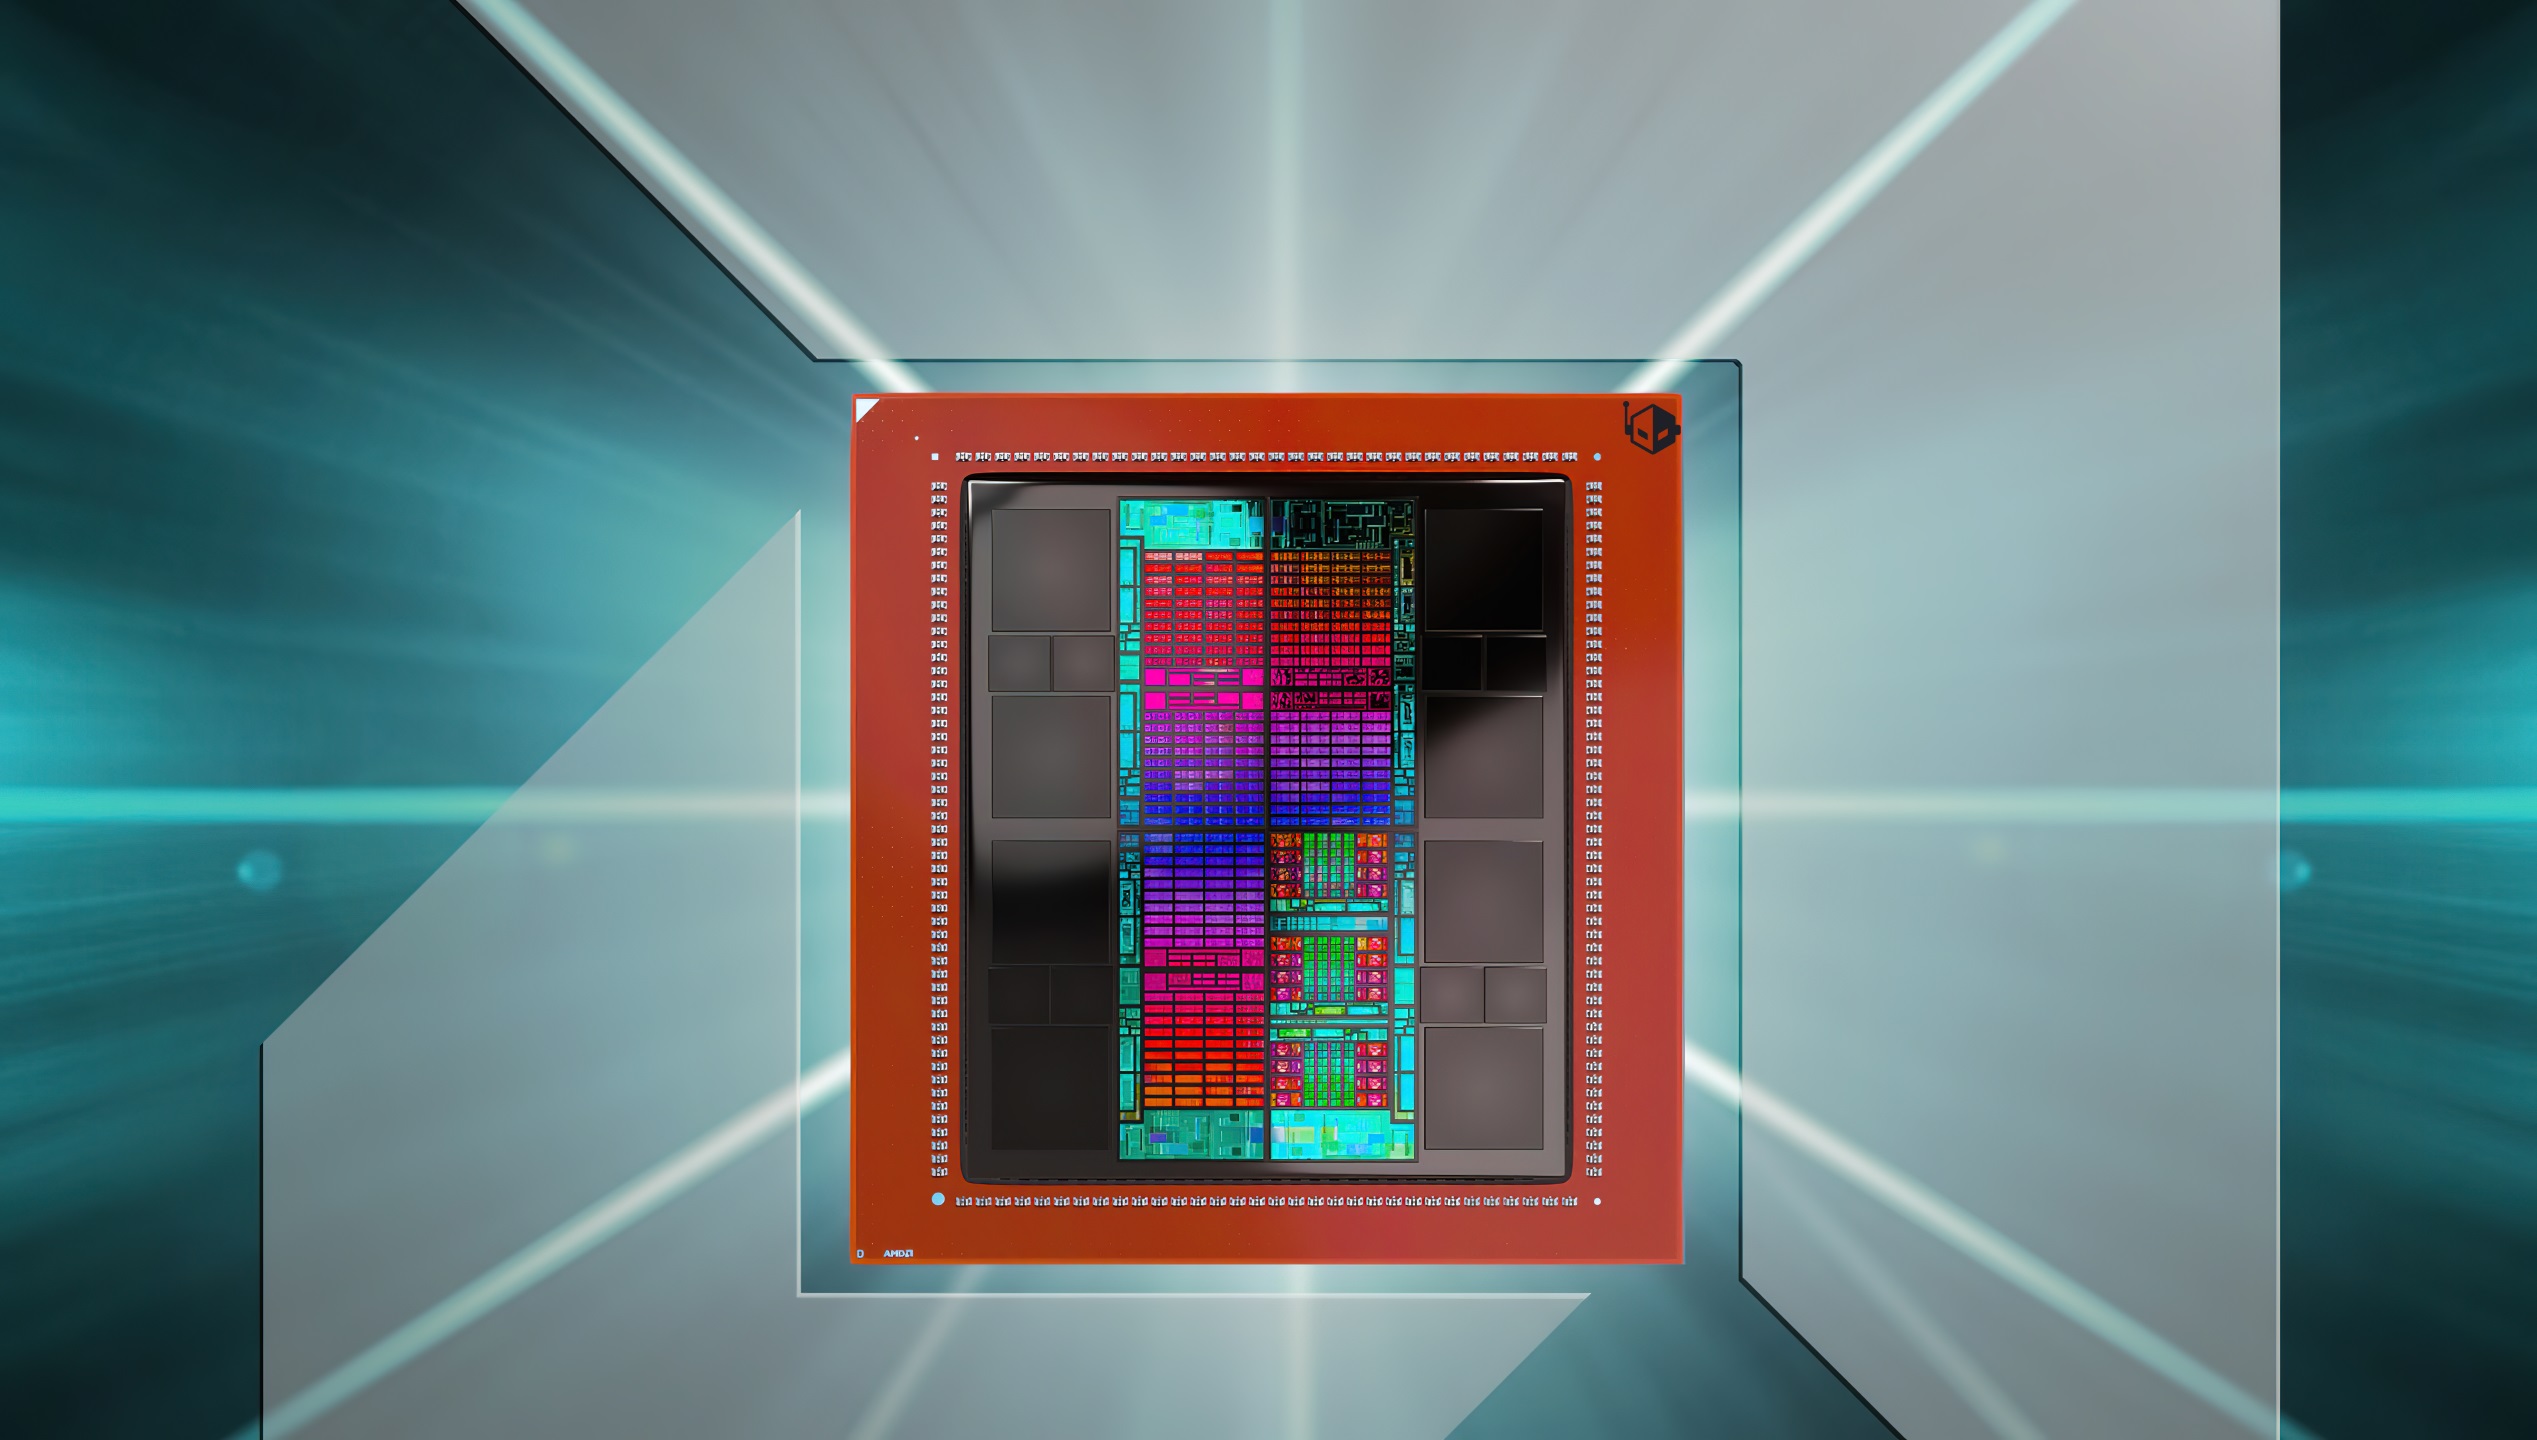 ชิปประมวลผลปัญญาประดิษฐ์ Instinct MI309 ของ AMD สำหรับจีน อาจถูกสหรัฐฯ ปฏิเสธอนุมัติ